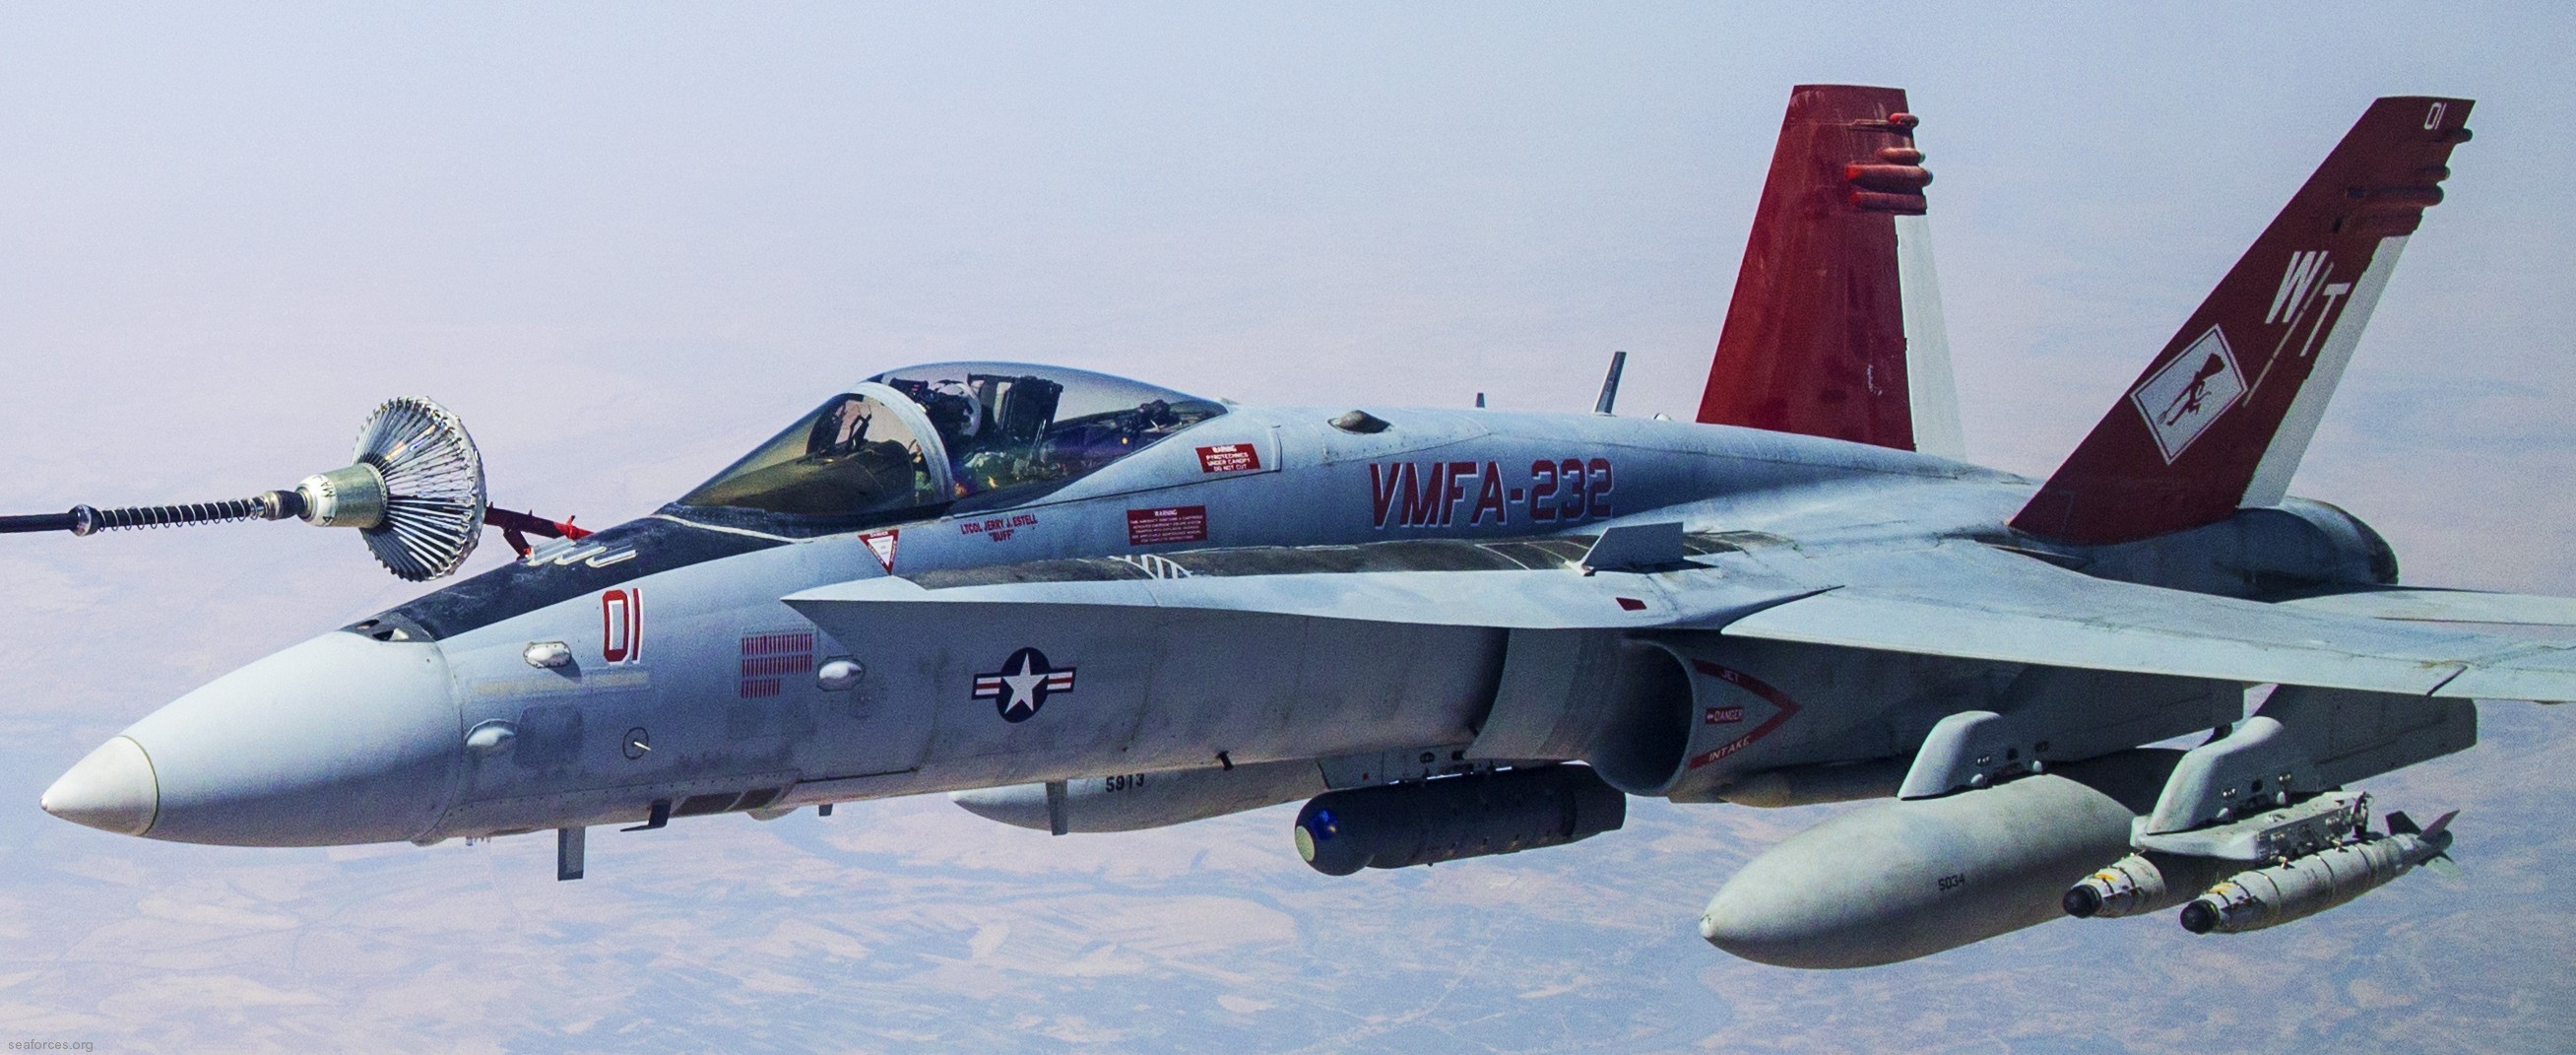 vmfa-232 red devils marine fighter attack squadron usmc f/a-18c hornet 119 iraq